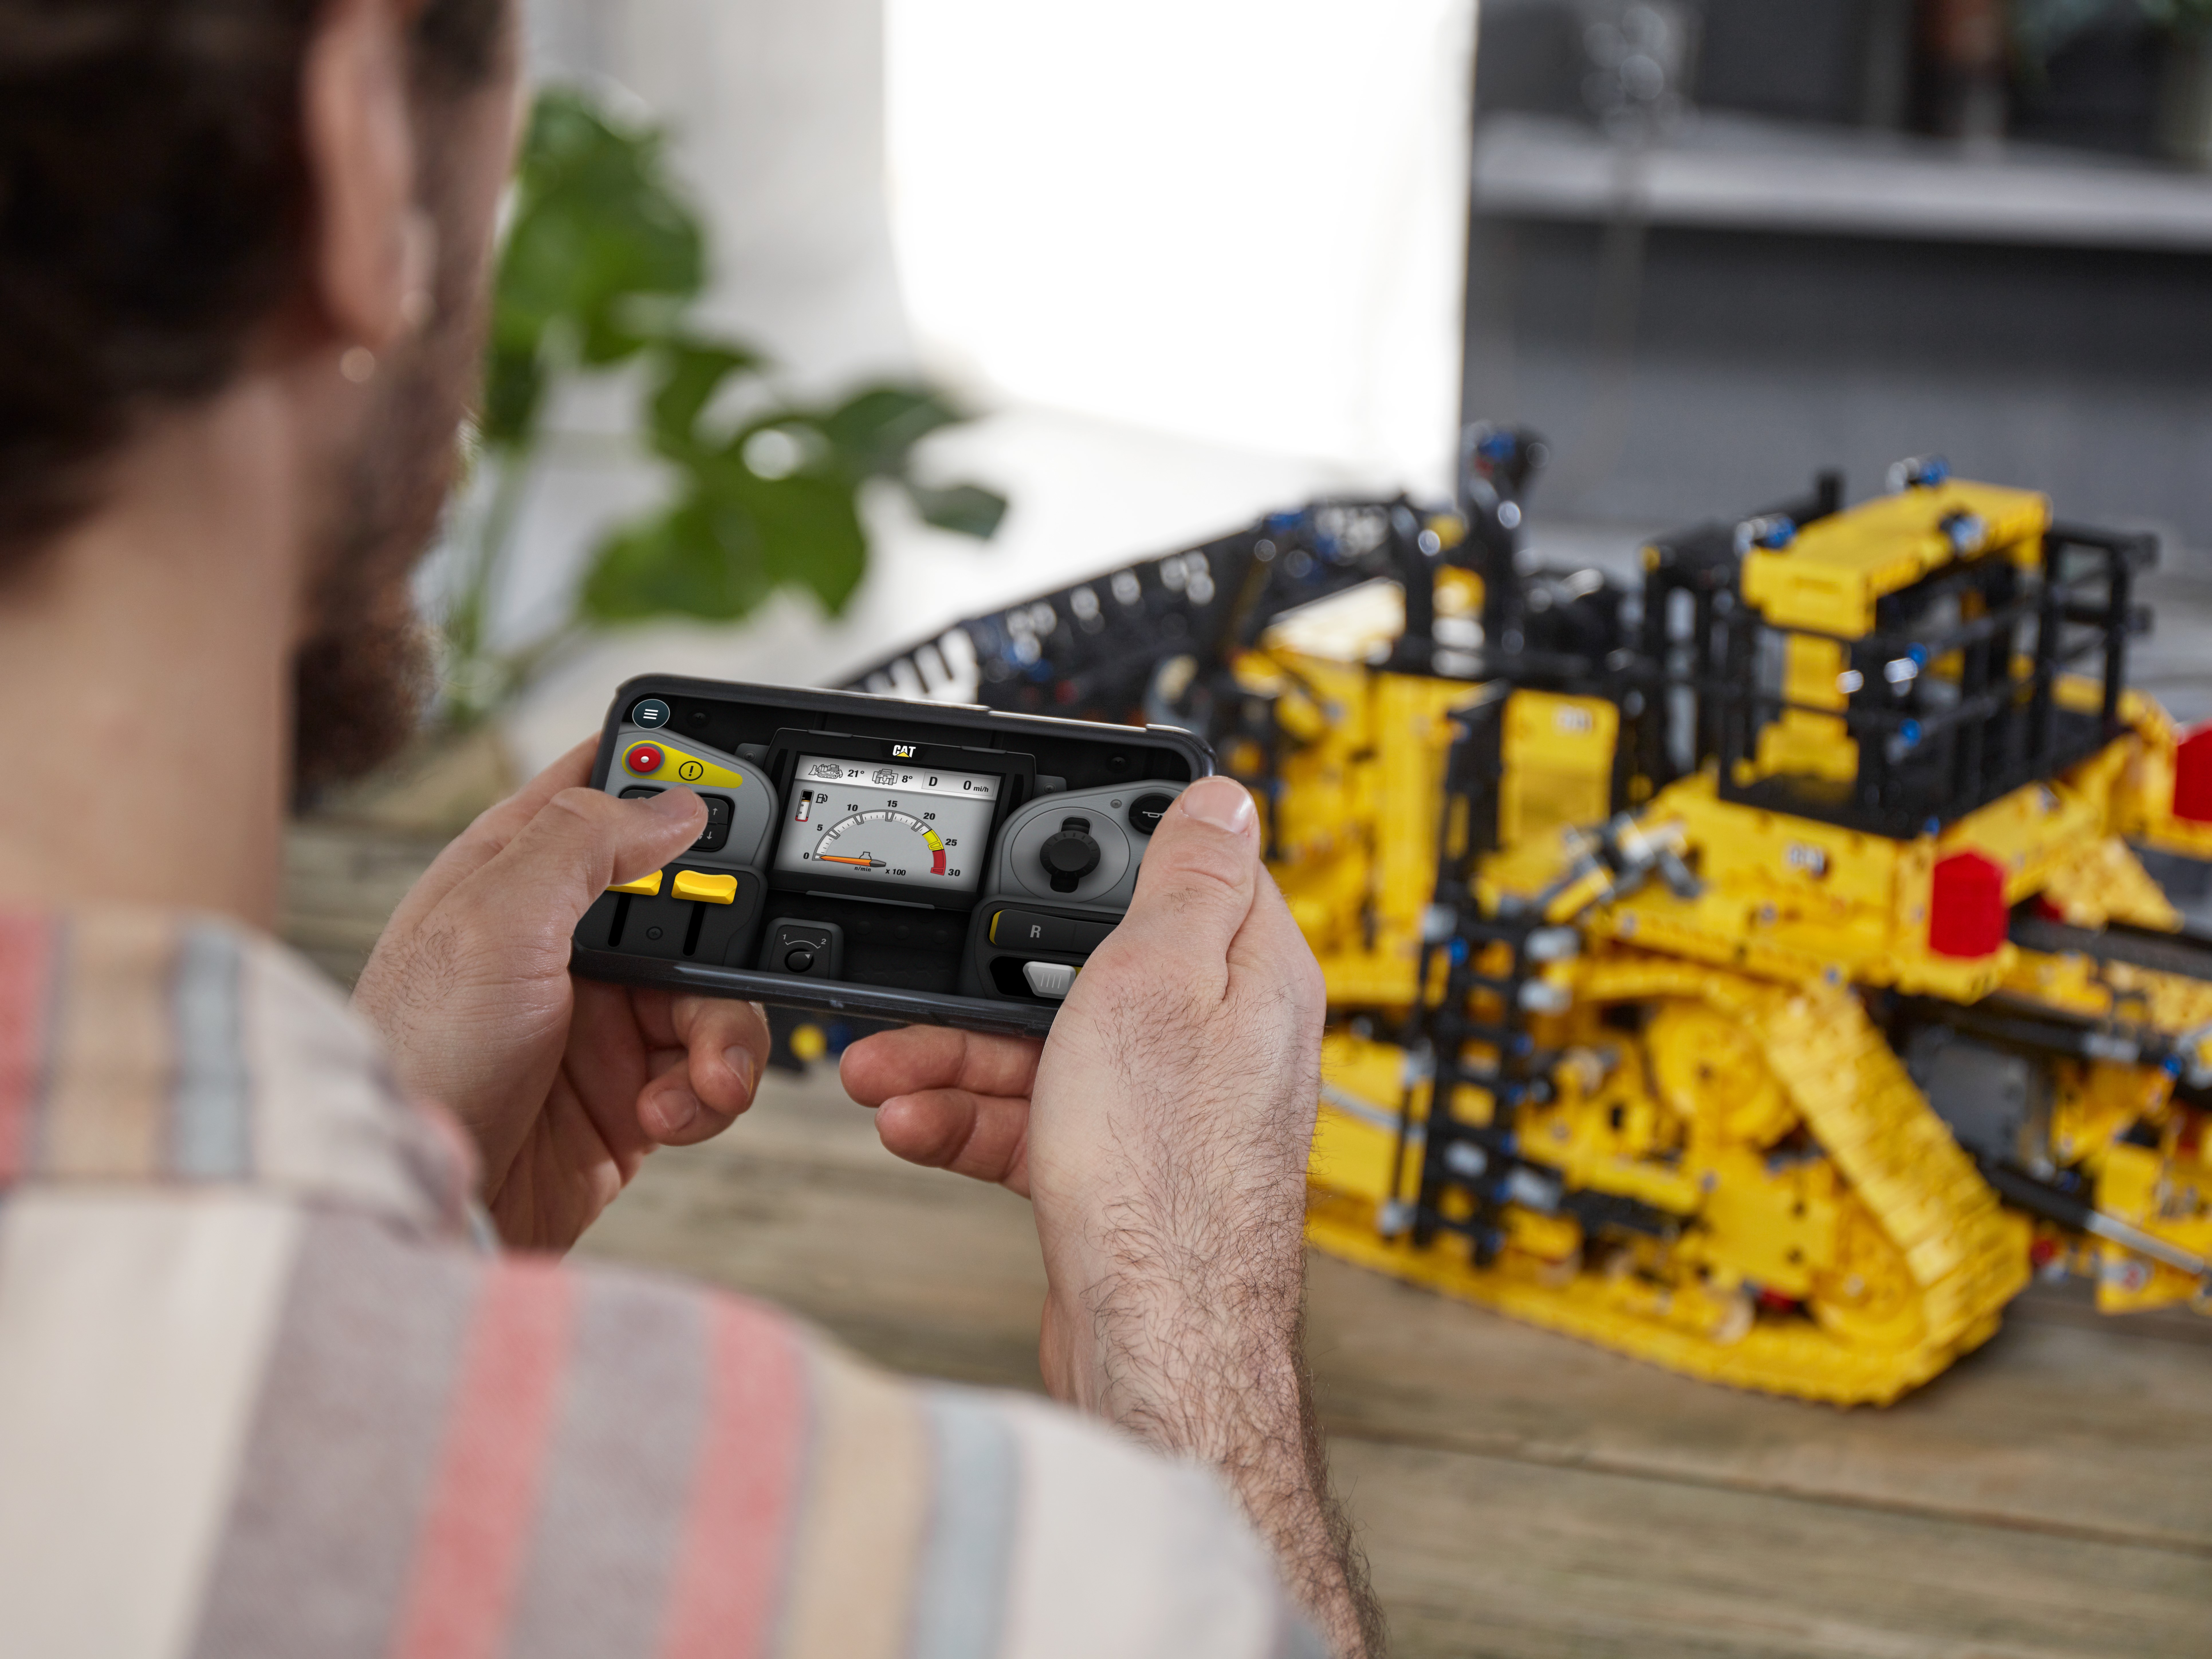 42131 - LEGO® Technic - Bulldozer D11 Cat® télécommandé LEGO : King Jouet,  Lego, briques et blocs LEGO - Jeux de construction